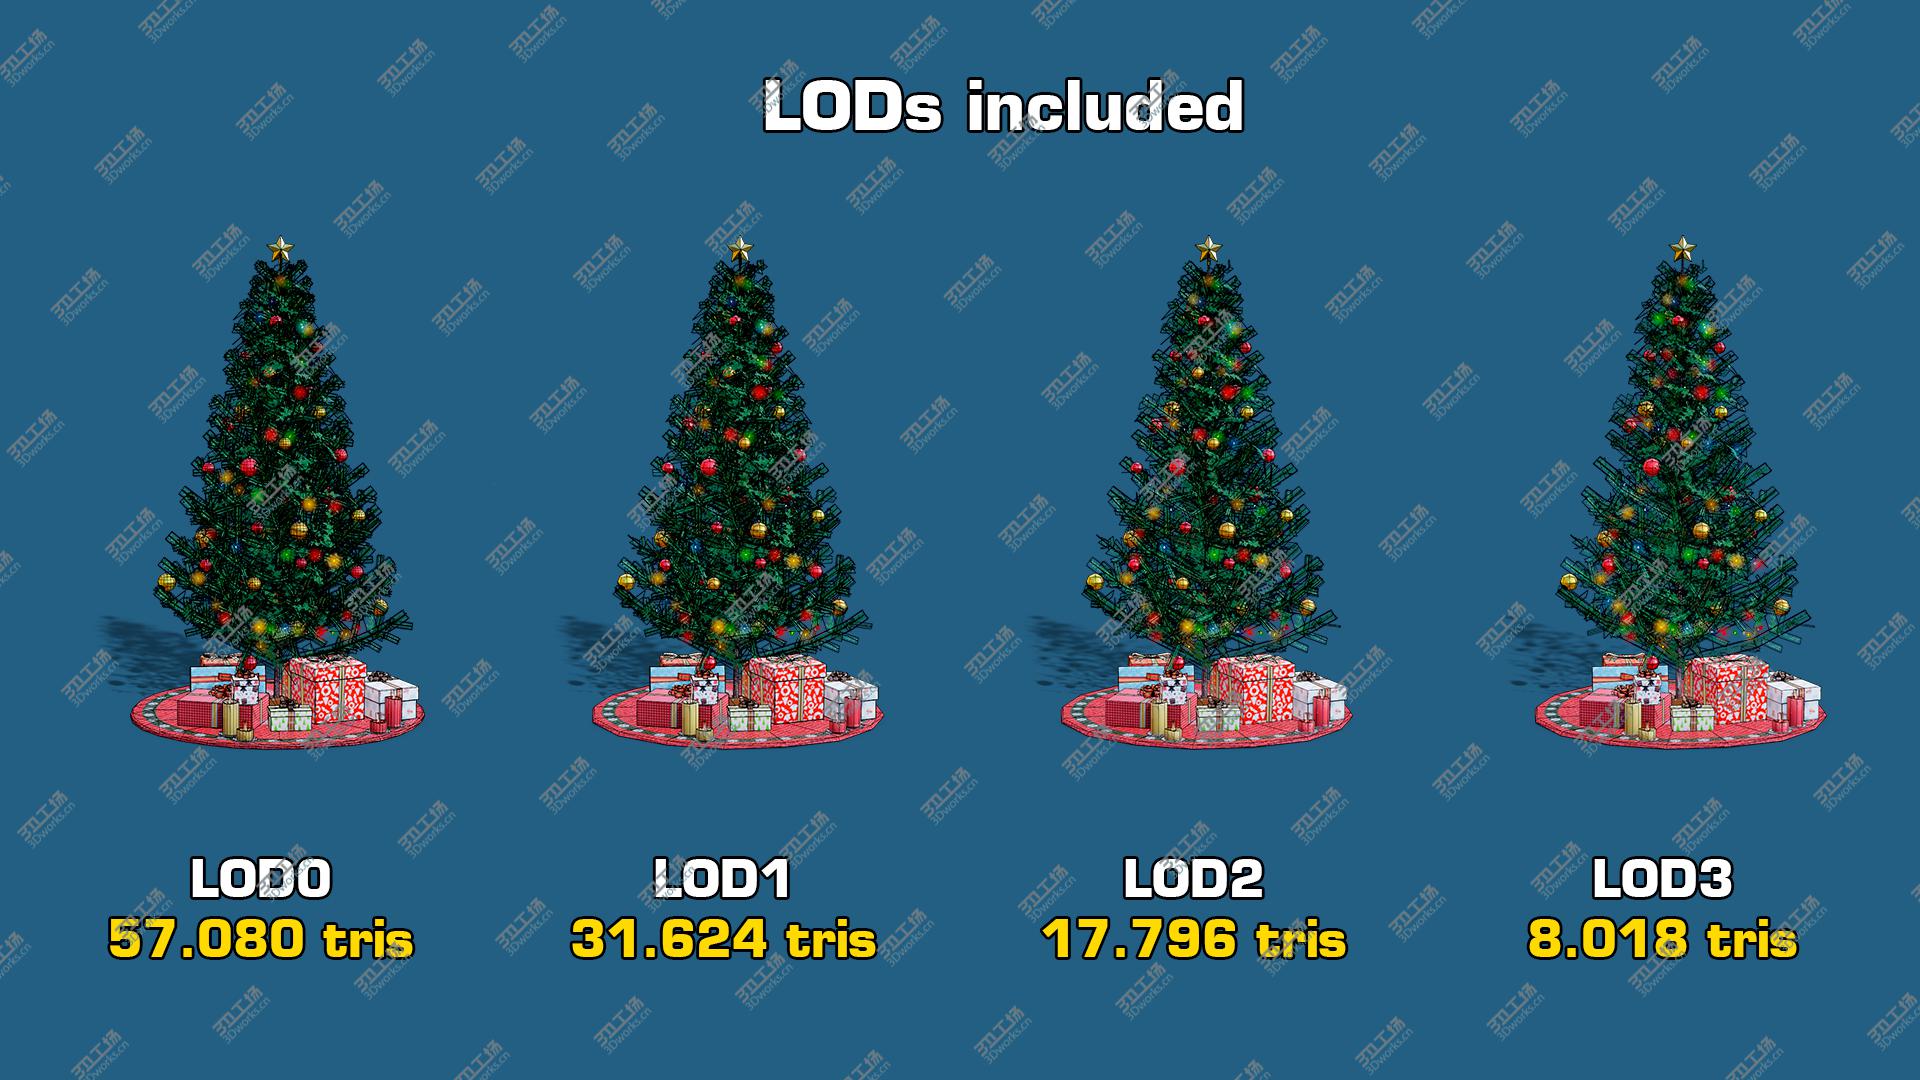 images/goods_img/2021040161/Christmas Tree GameReady LODs model/4.jpg